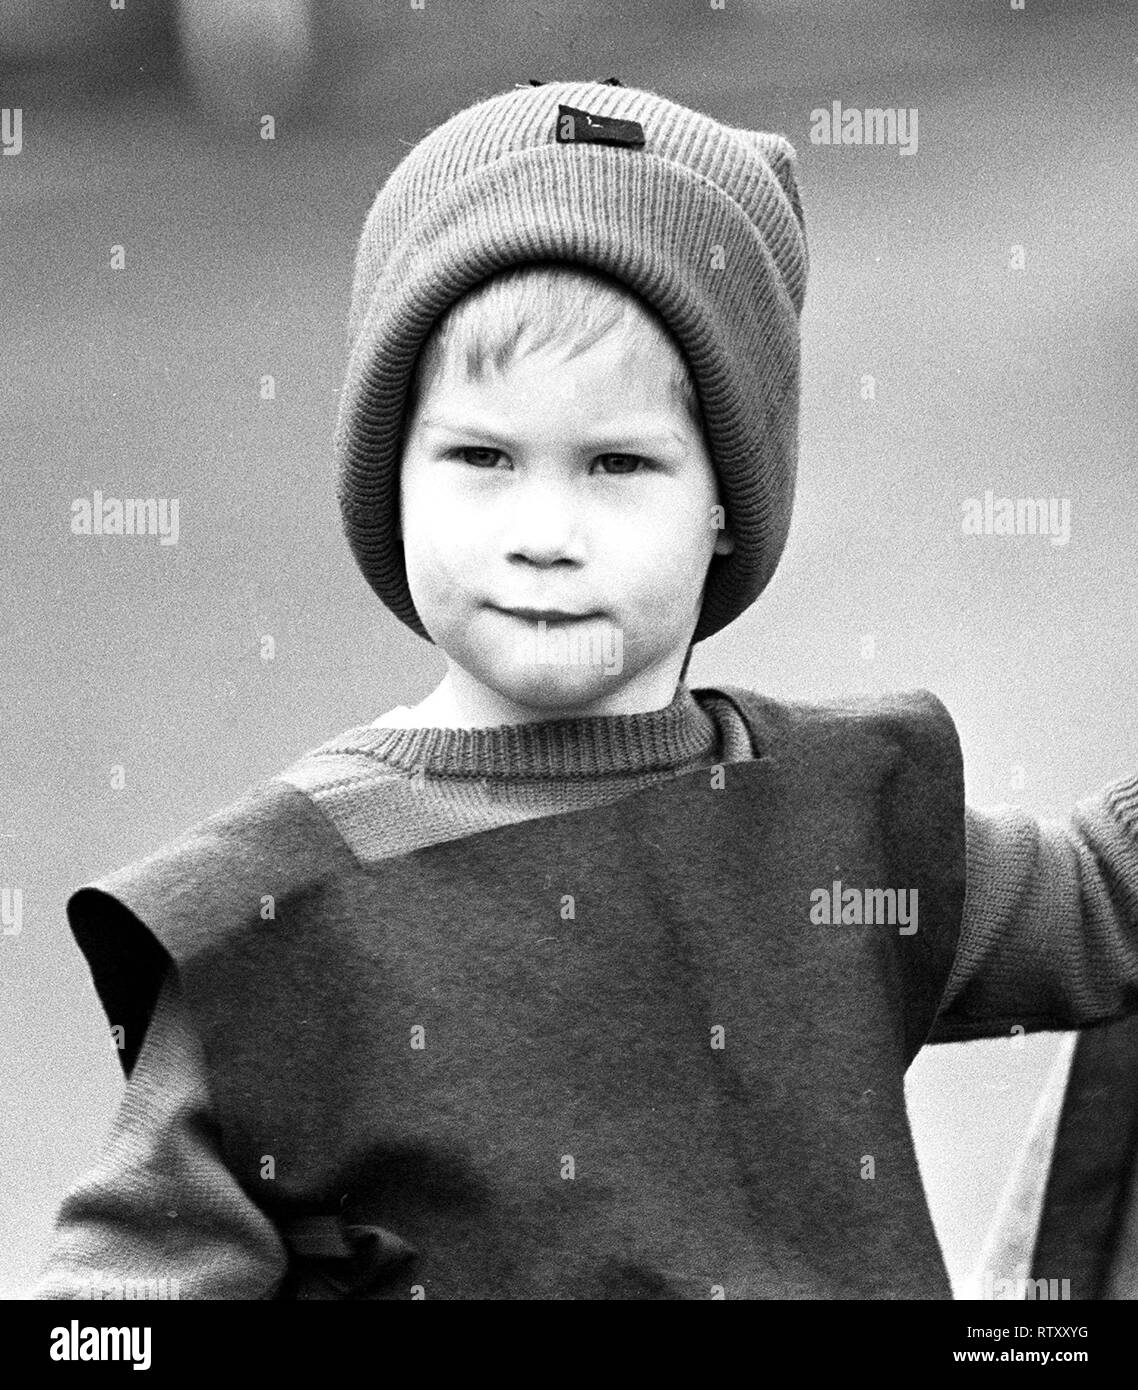 Photo de fichier en date du 09/12/87 de prince Harry arrive à son école maternelle dans le quartier de Notting Hill à pixie-comme gerbe en préparation de la nativité de l'école jeu. Le duc de Sussex était un enfant adorable qui était courageux et espiègle même à un jeune âge. Banque D'Images